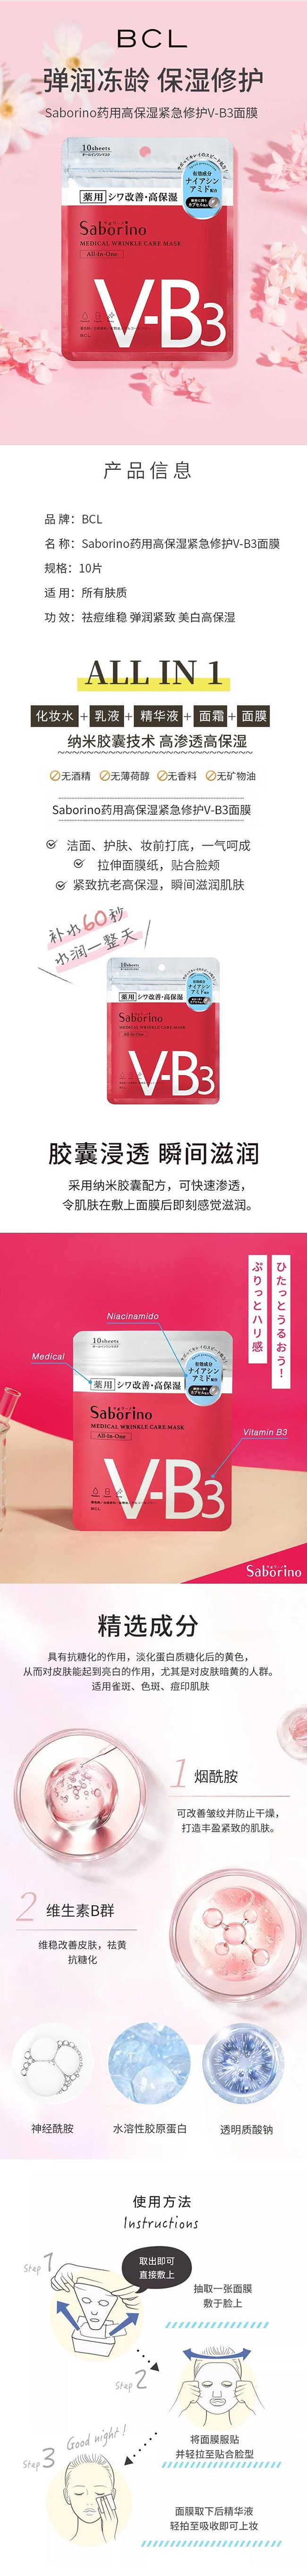 【日本直邮】BCL SABORINO 药用高保湿抗皱急速修护面膜 V-B3 10枚